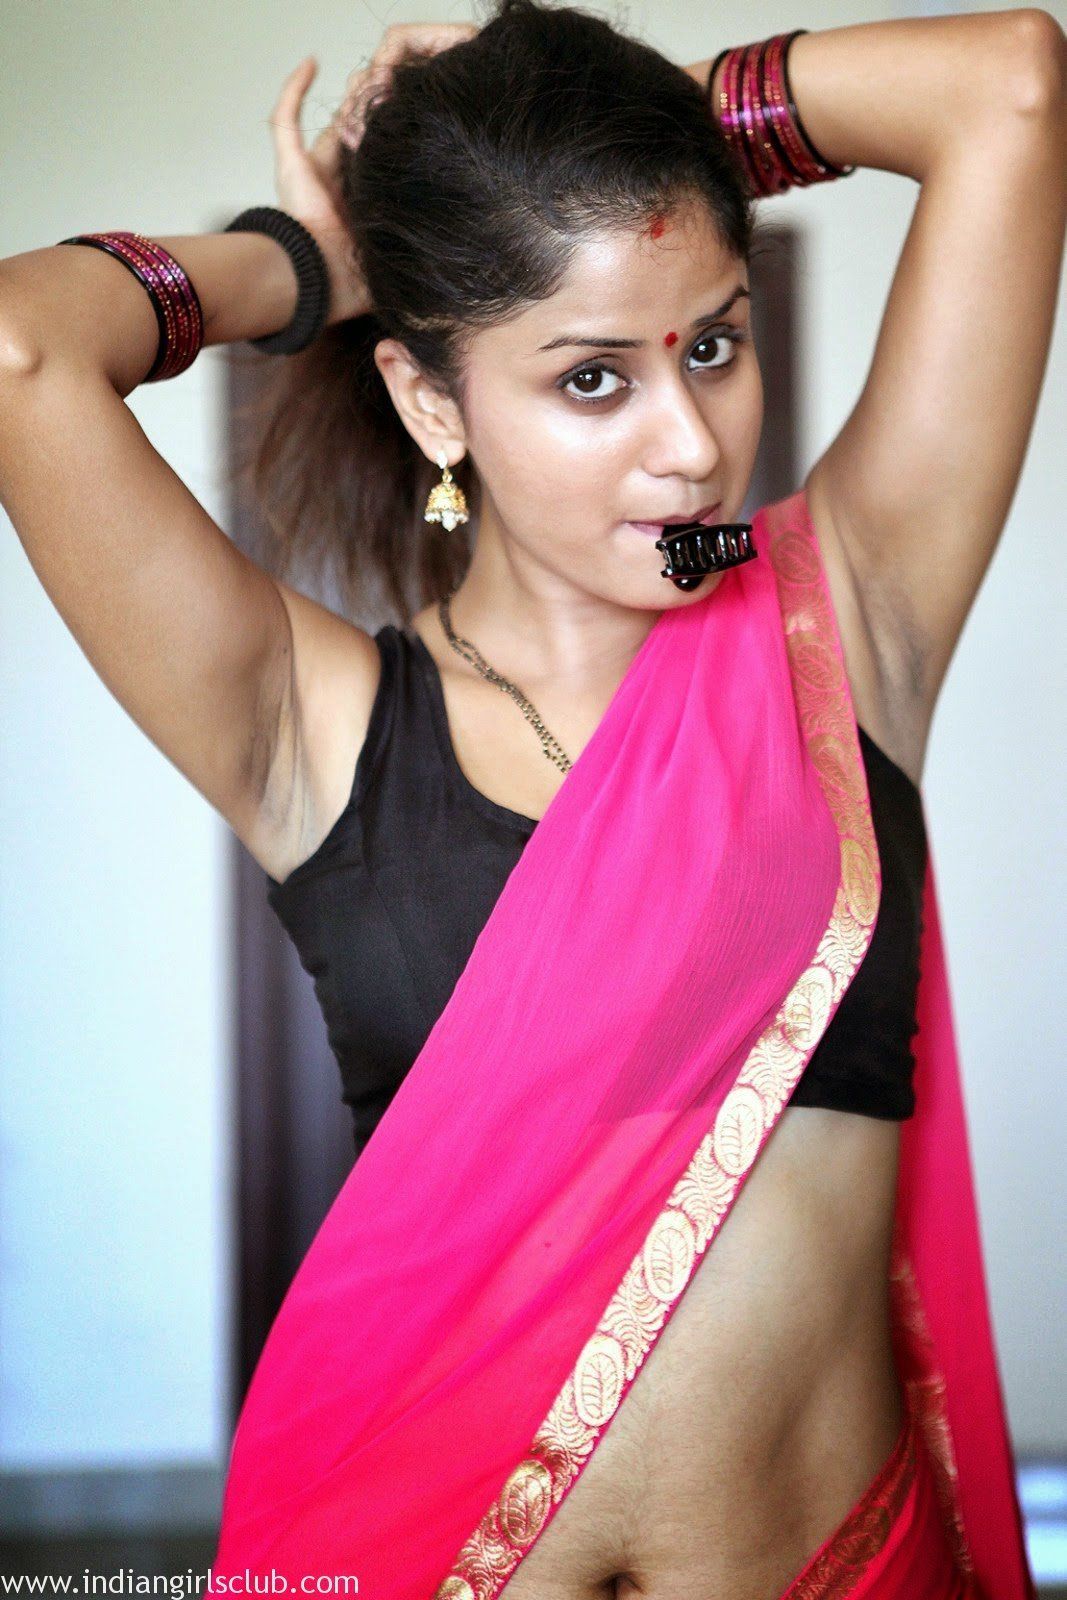 Bhabhi cleavage